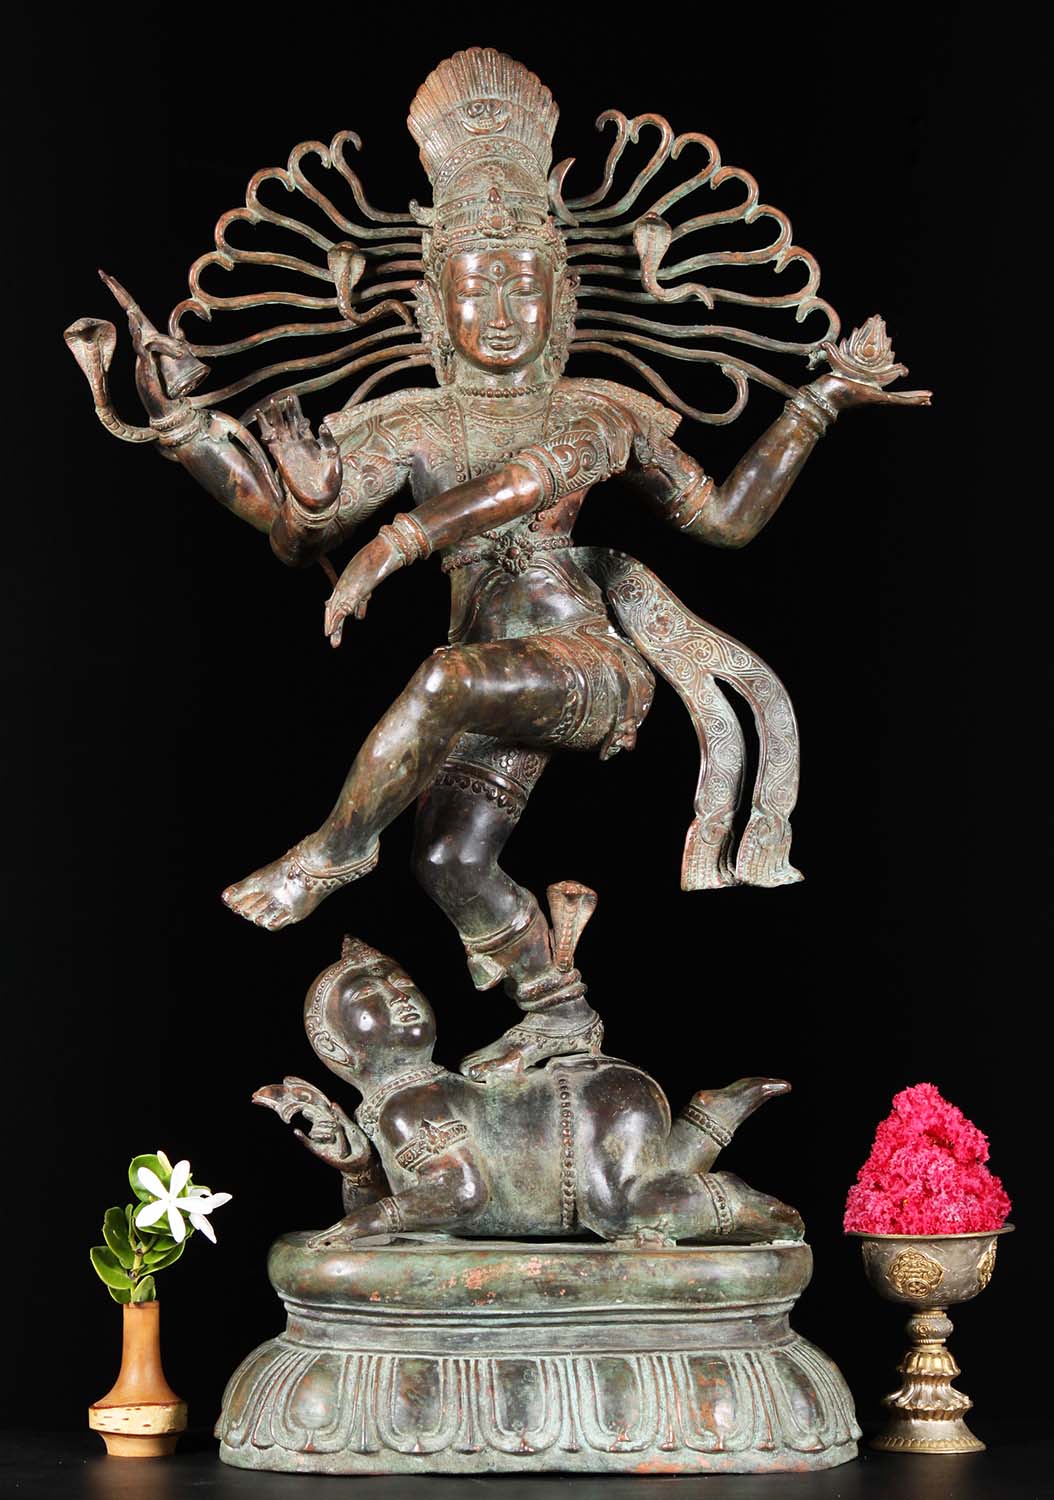  Bali  Brass Nataraja Statue  29 81bb32a Hindu Gods 